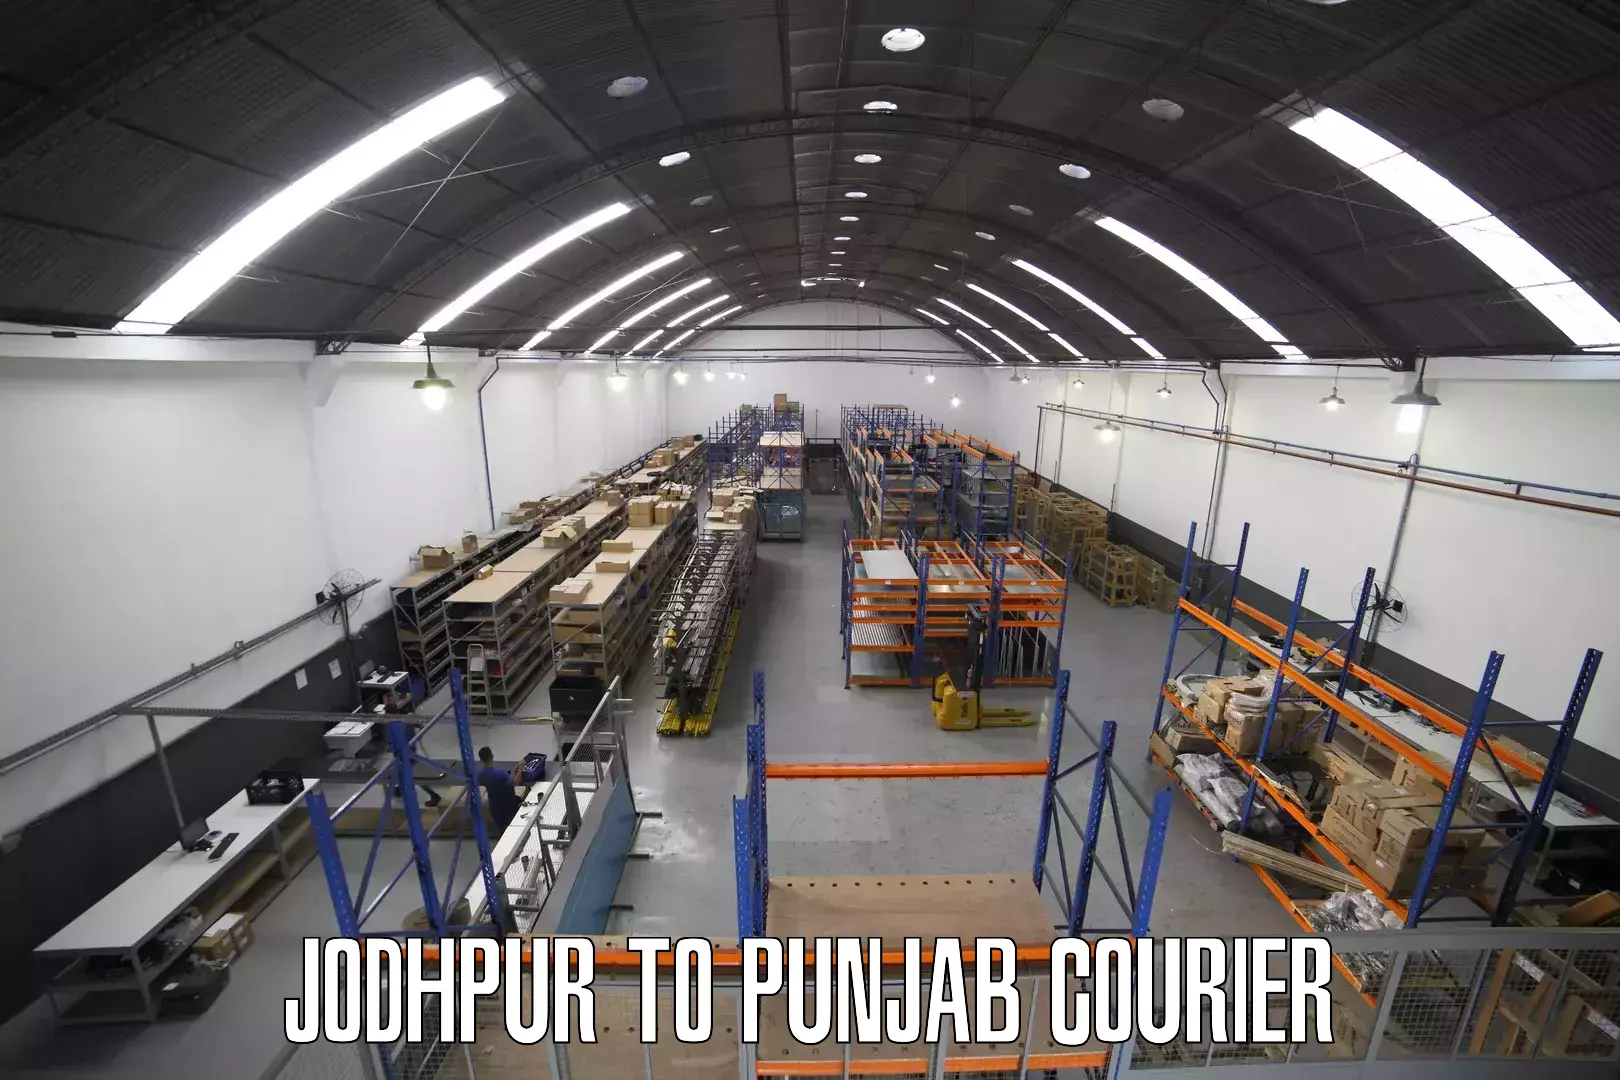 Tech-enabled shipping Jodhpur to Punjab